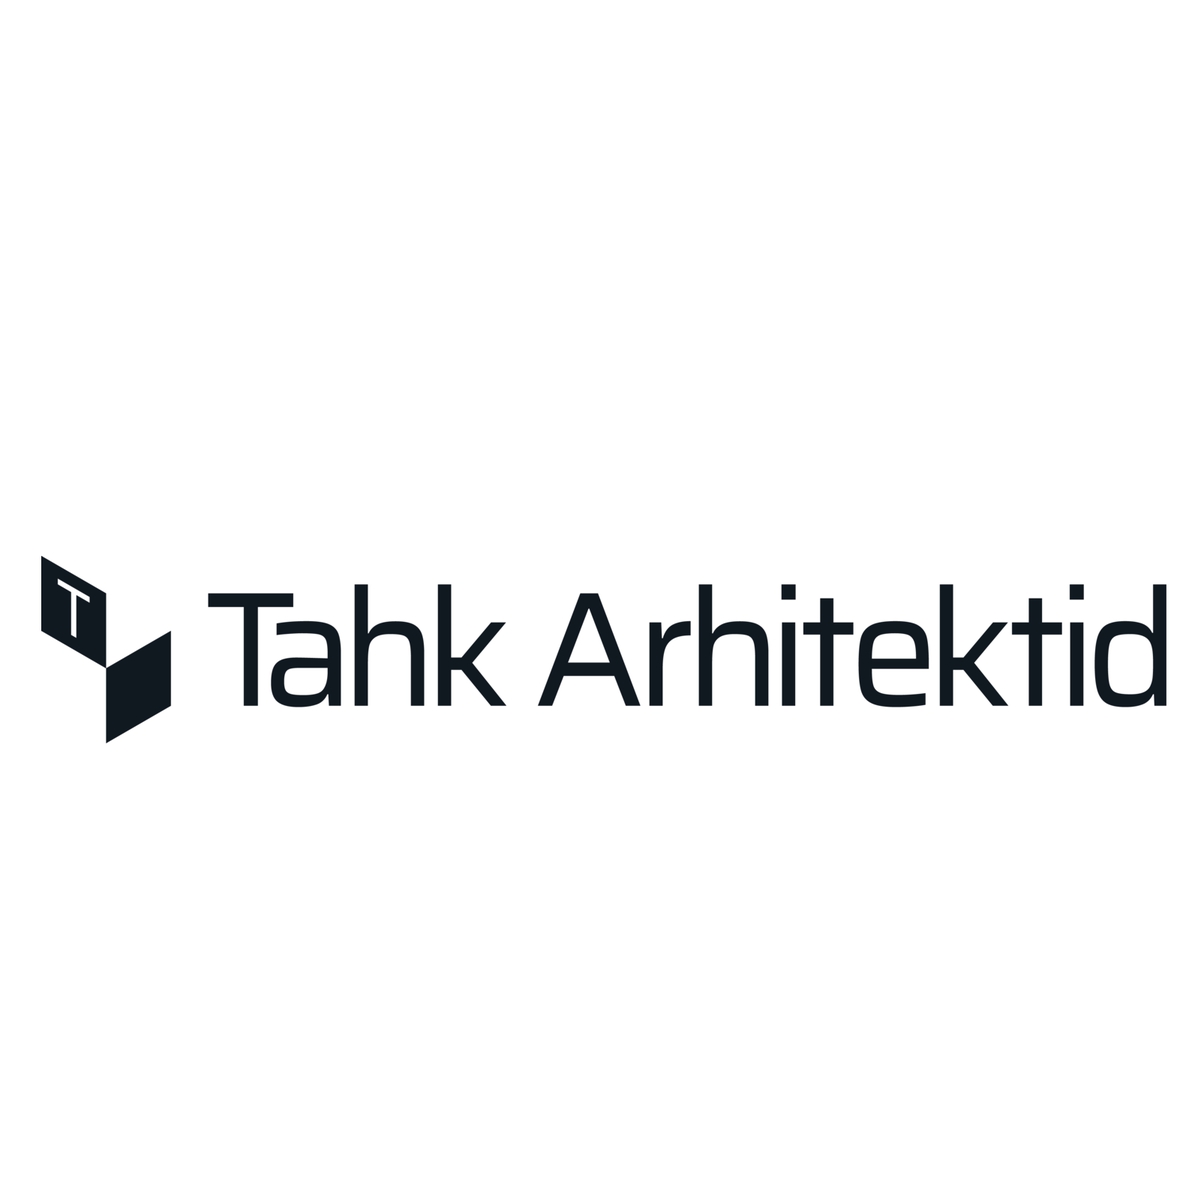 TAHK ARHITEKTID OÜ - Architectural activities in Tallinn